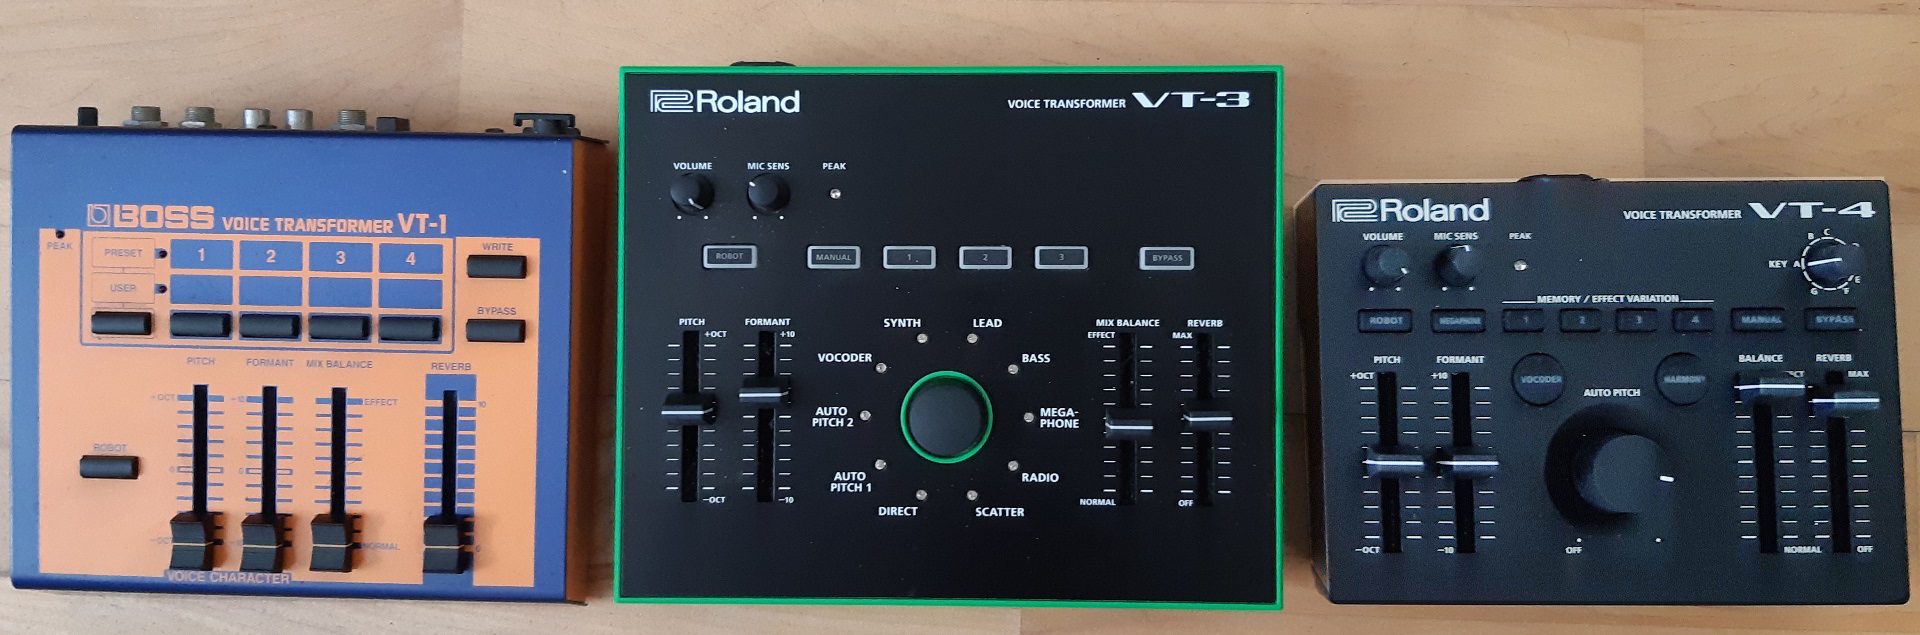 Test: Roland VT-4, Voice Transformer Vocoder - AMAZONA.de